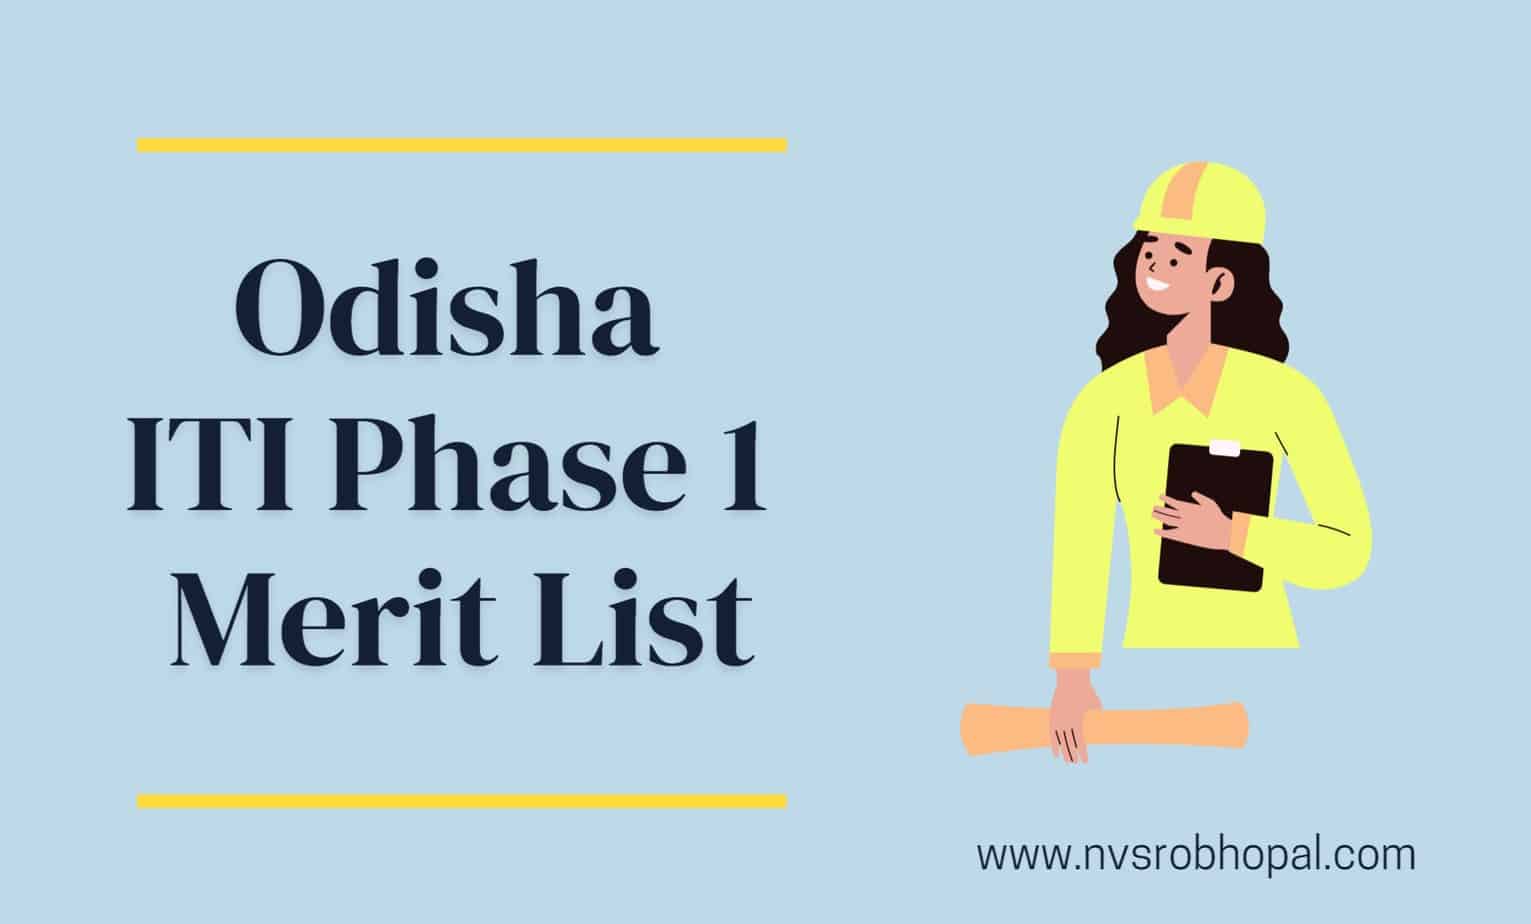 odisha-iti-merit-list